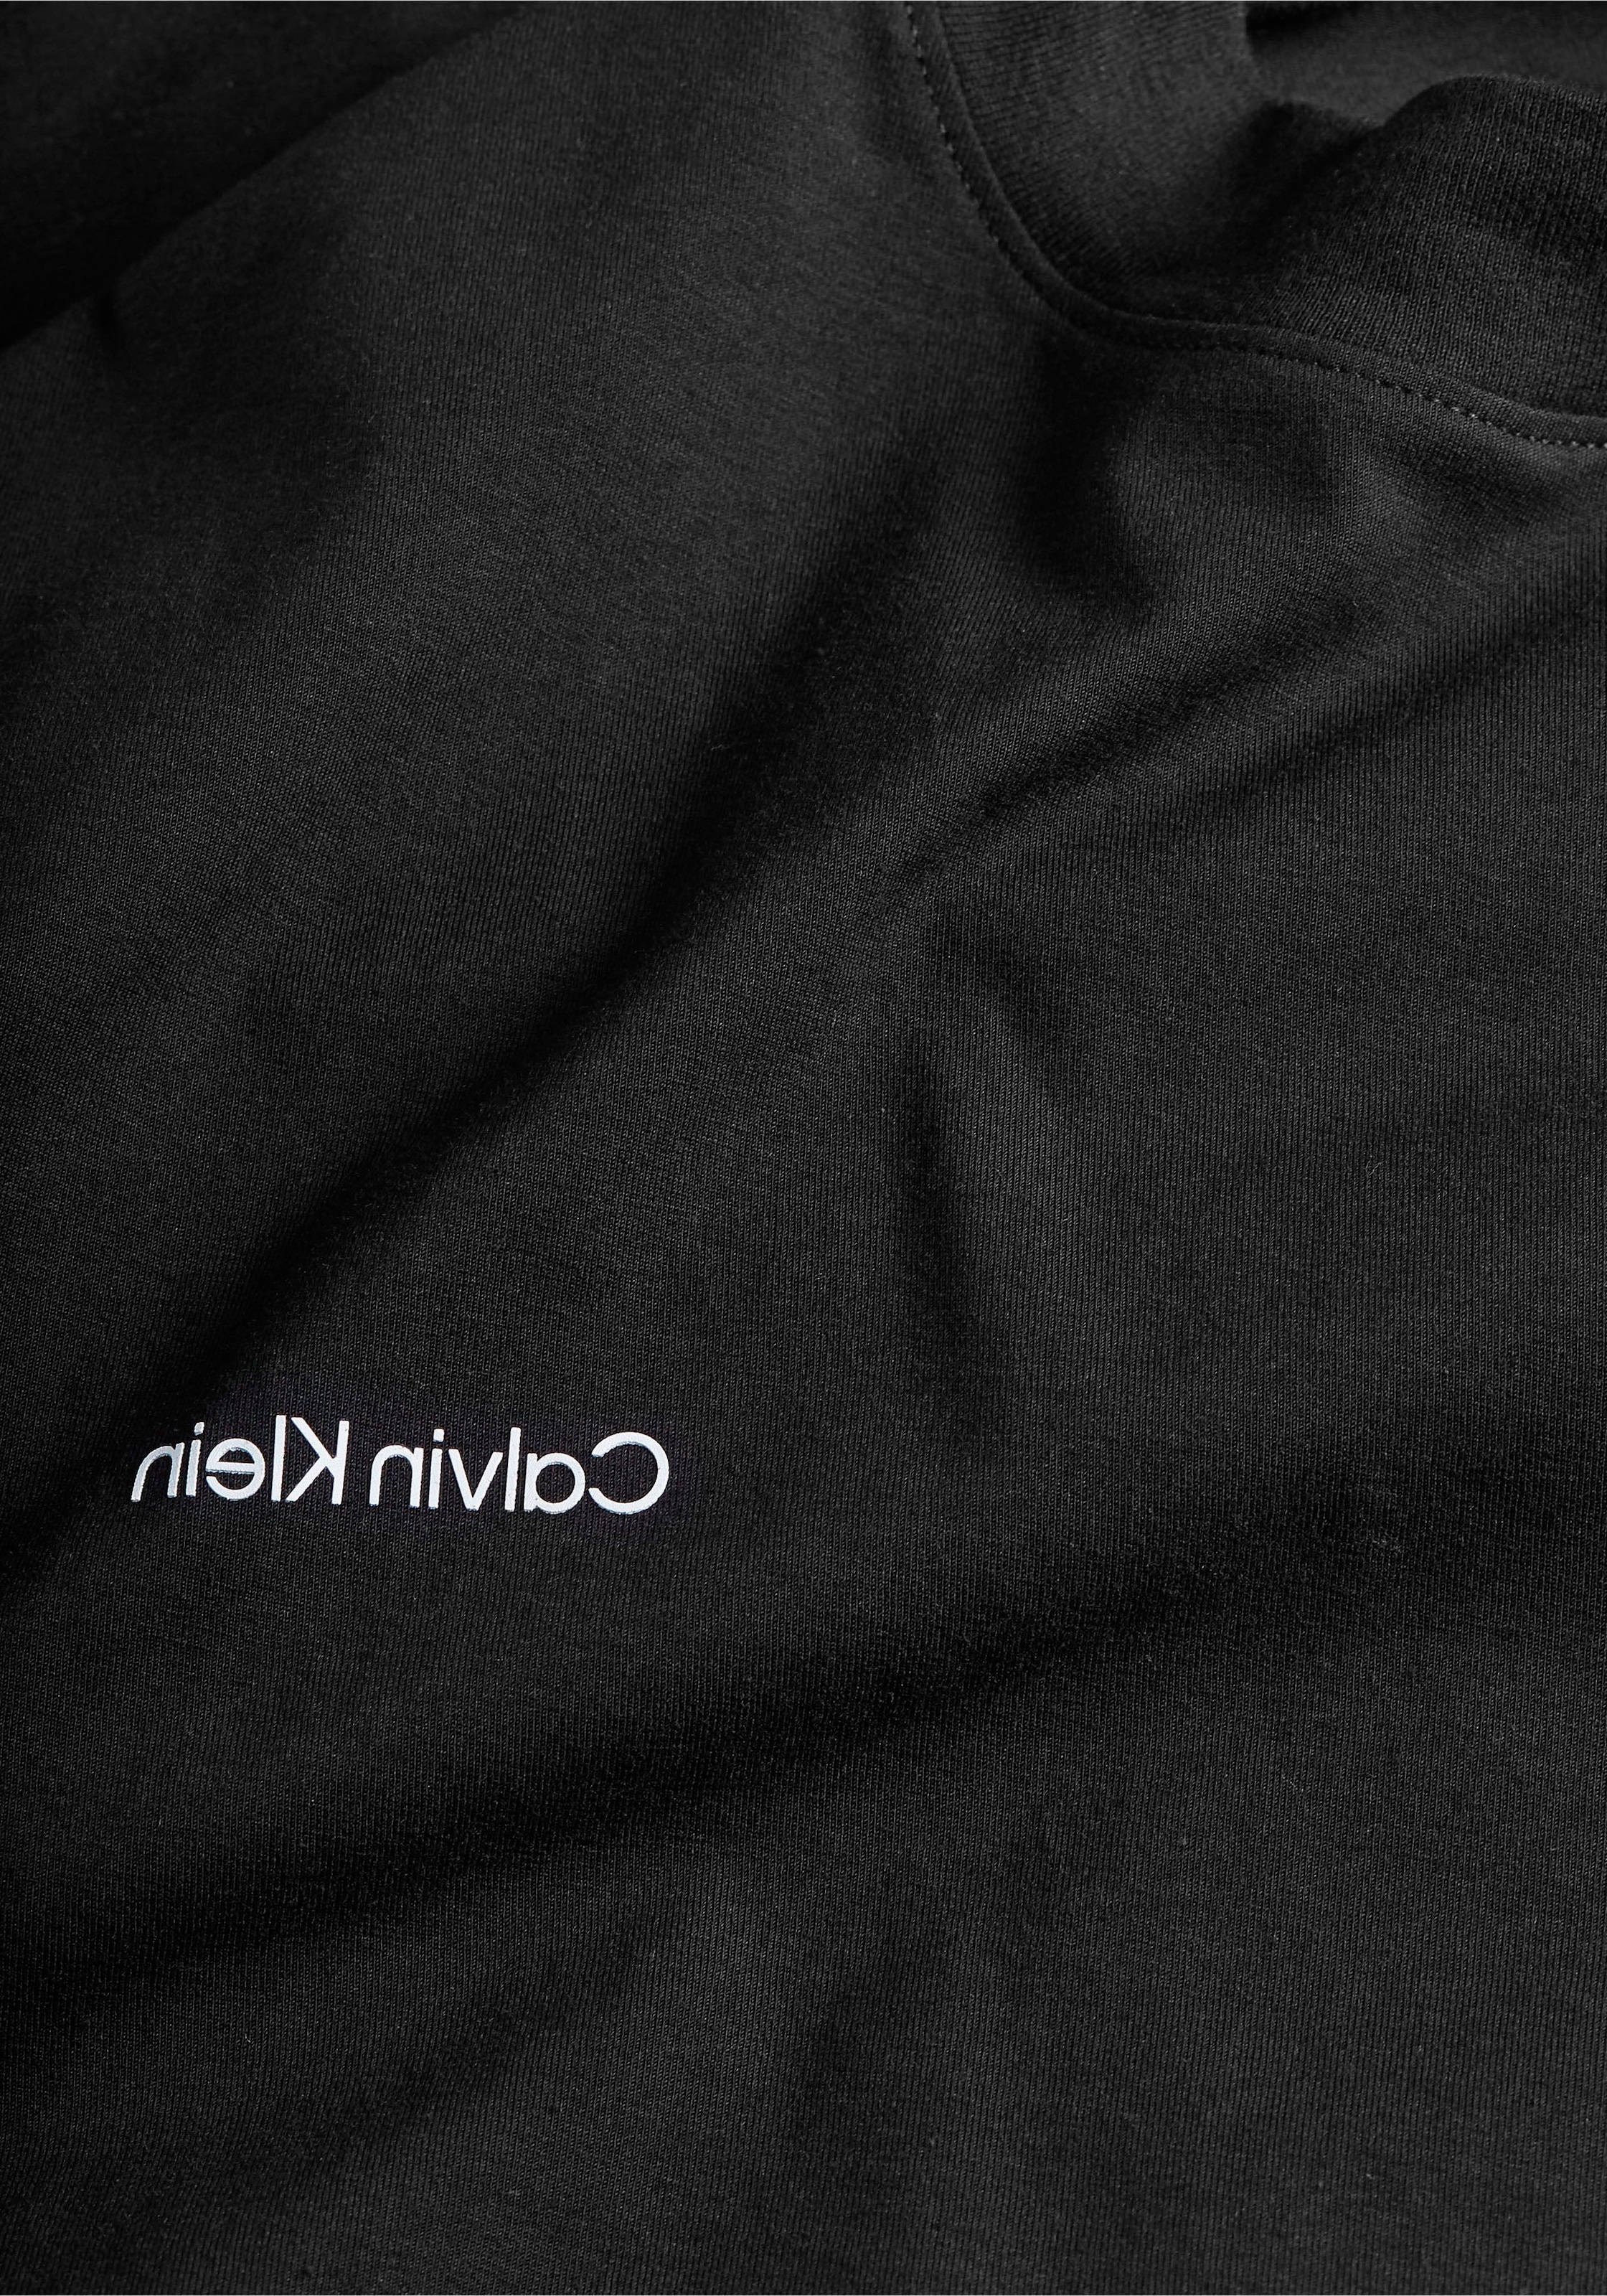 Calvin Klein Langarmshirt »MICRO LOGO LS MOCK NECK T-SHIRT«, mit Mock-Kragen